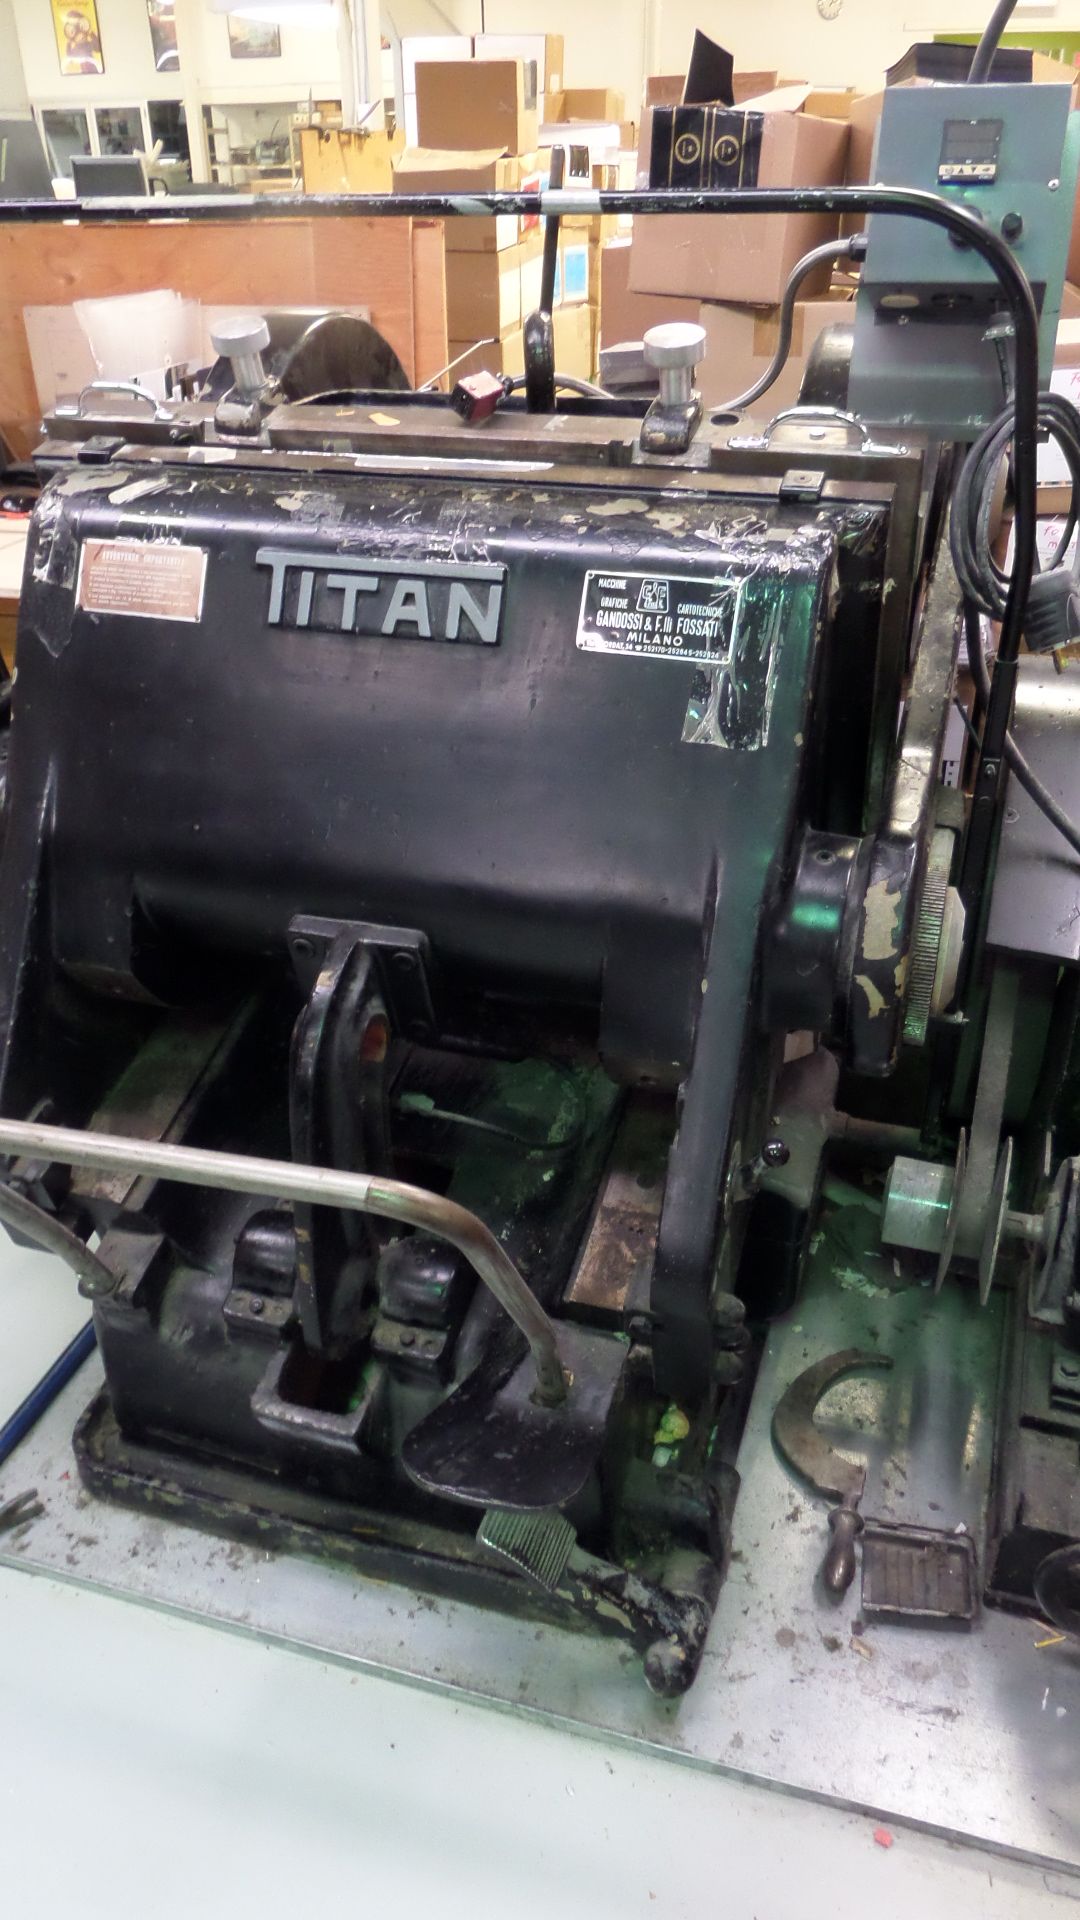 Titan 22" x 32" Die Cutting Press - Printing; c/w Heated Platen 15.5" x 20.5"